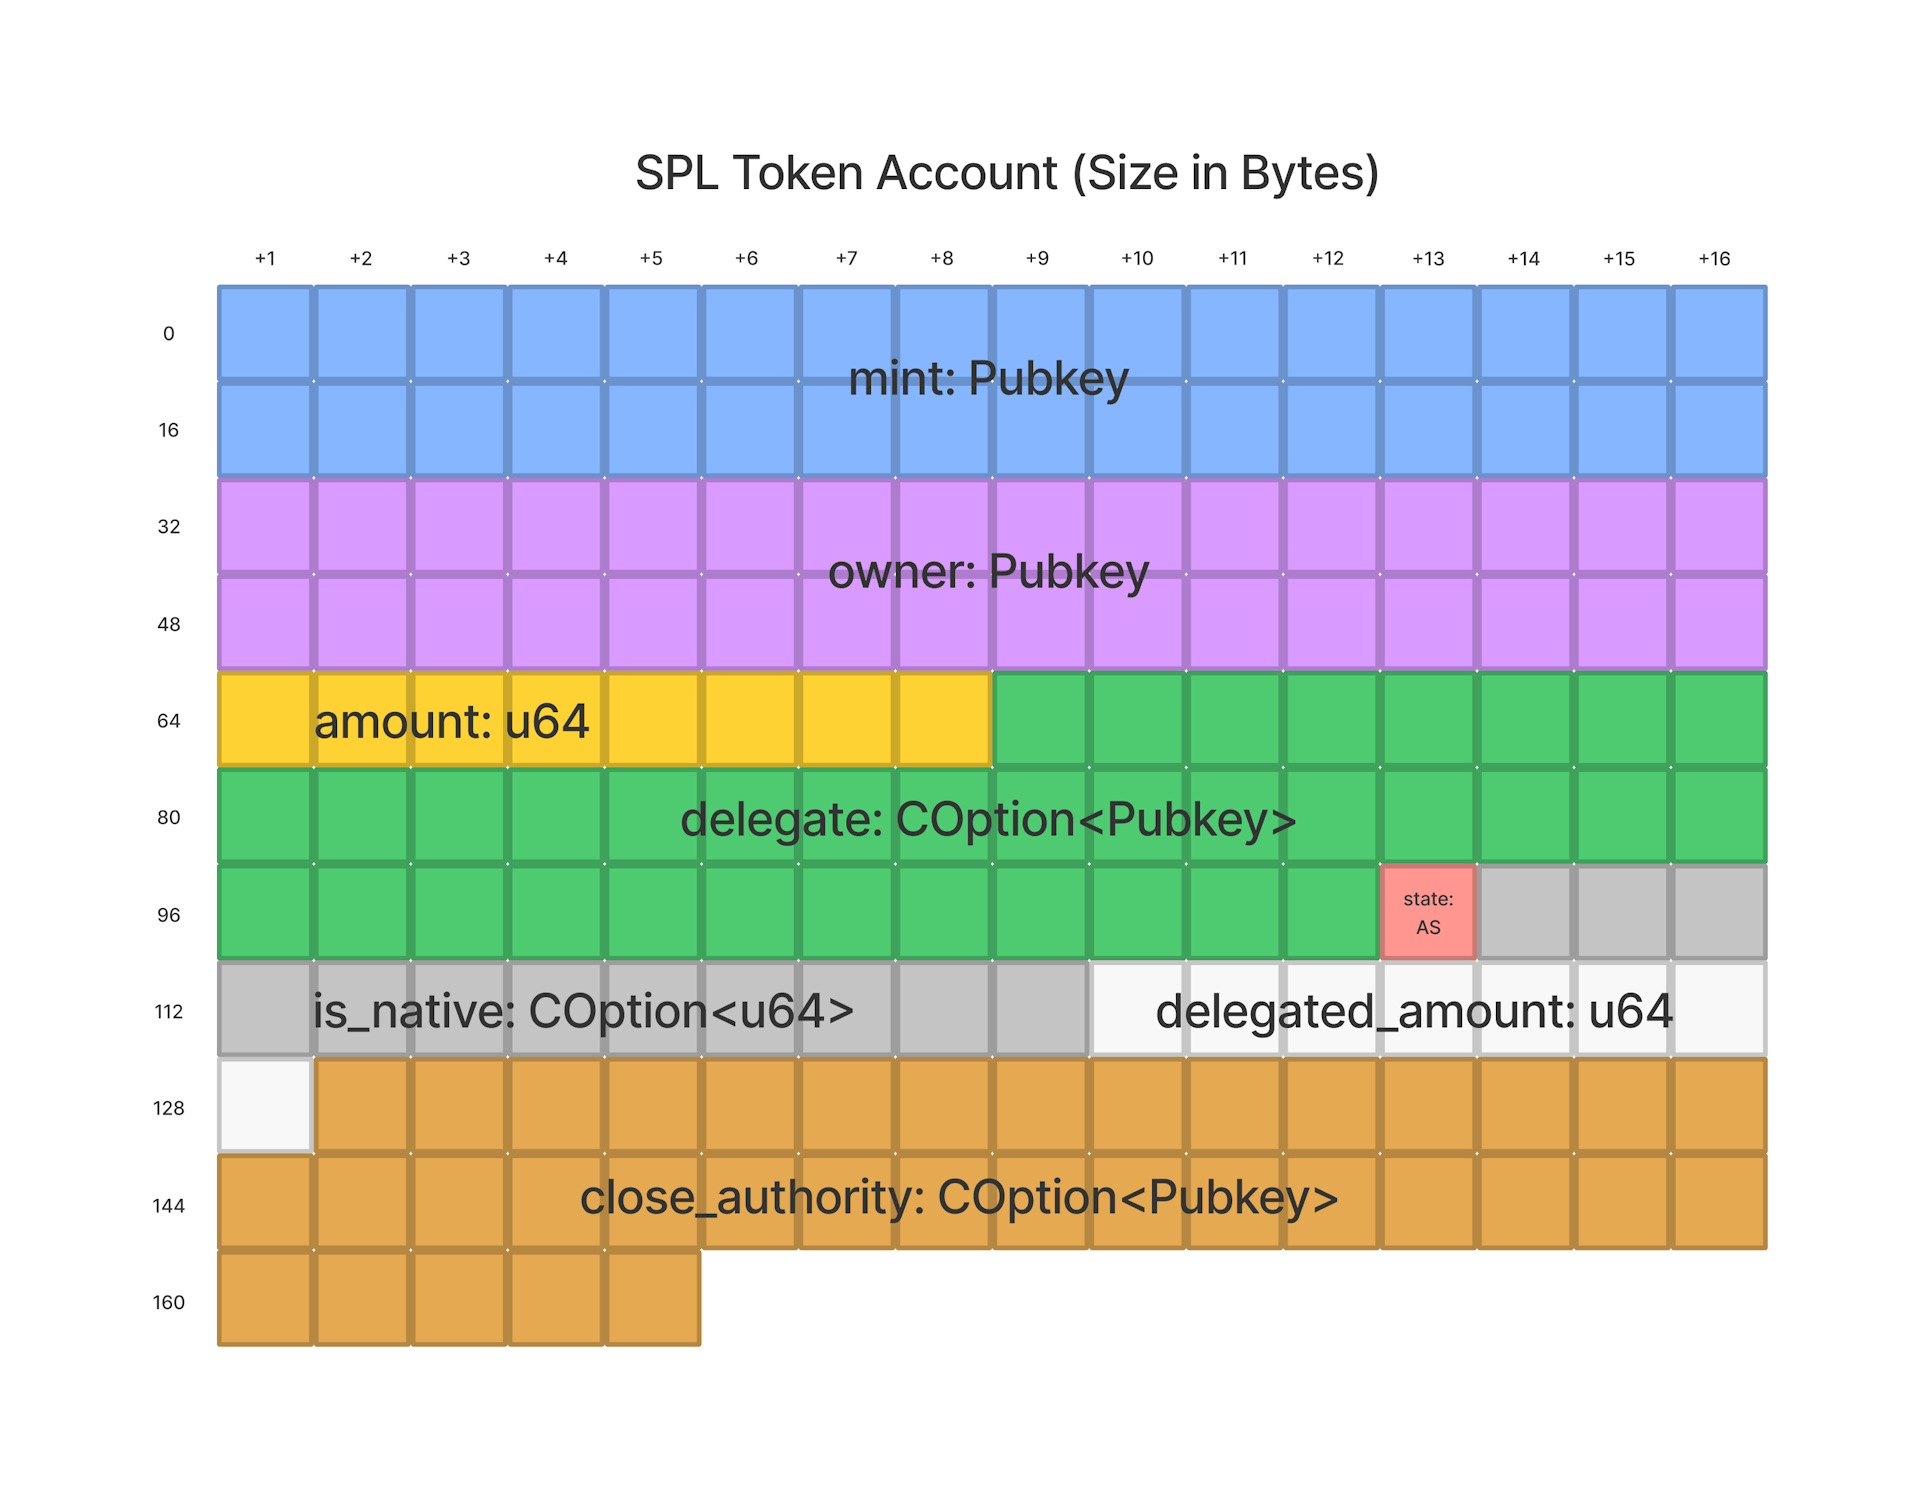 spl token account memory layout